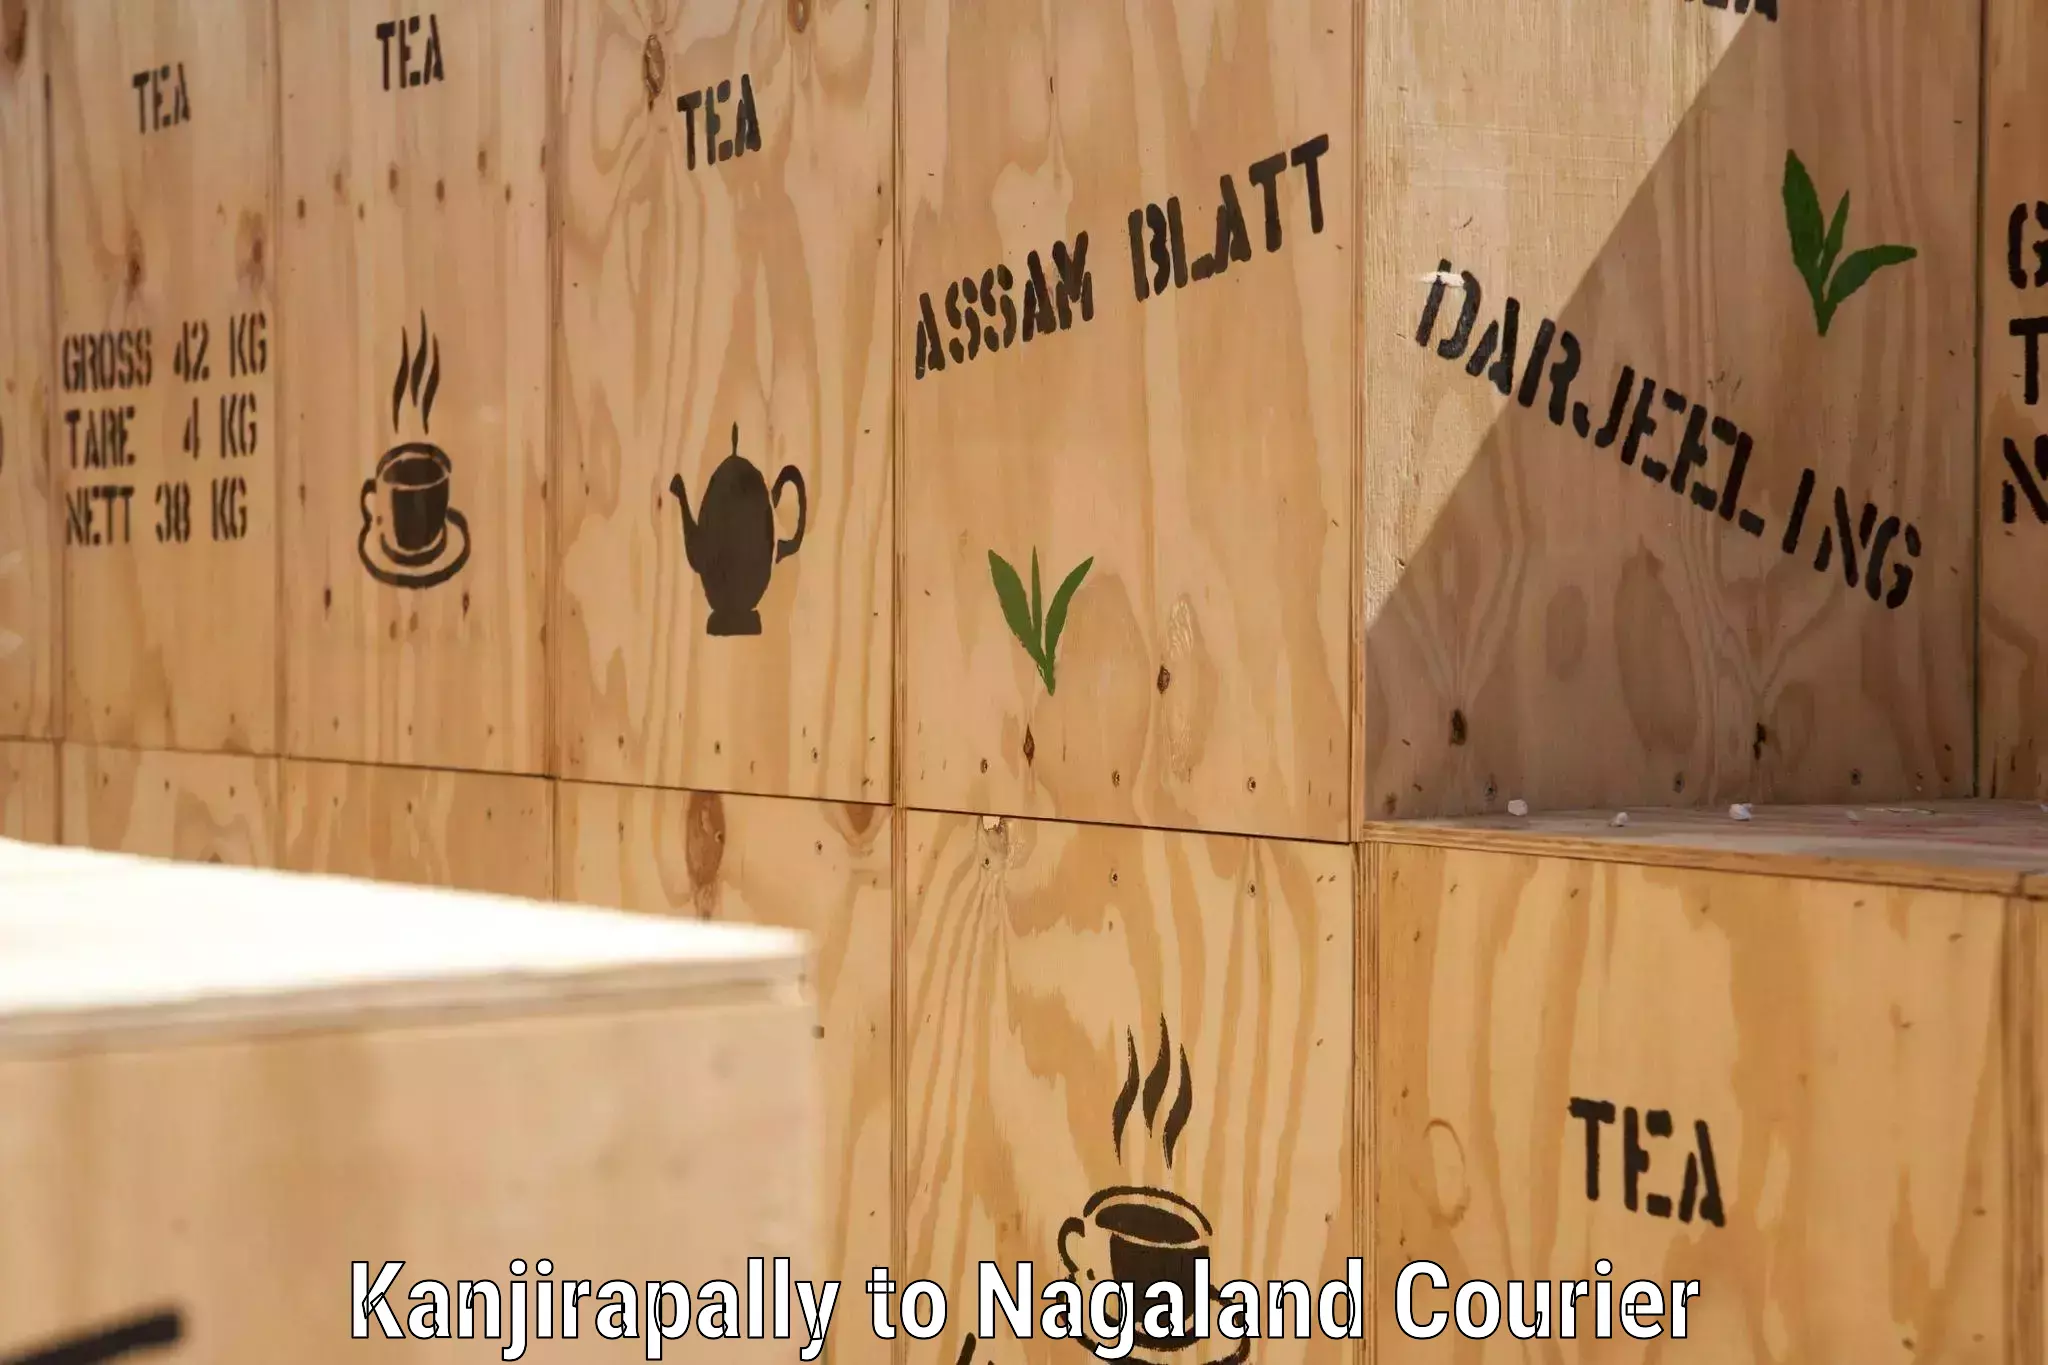 Global shipping networks Kanjirapally to Nagaland